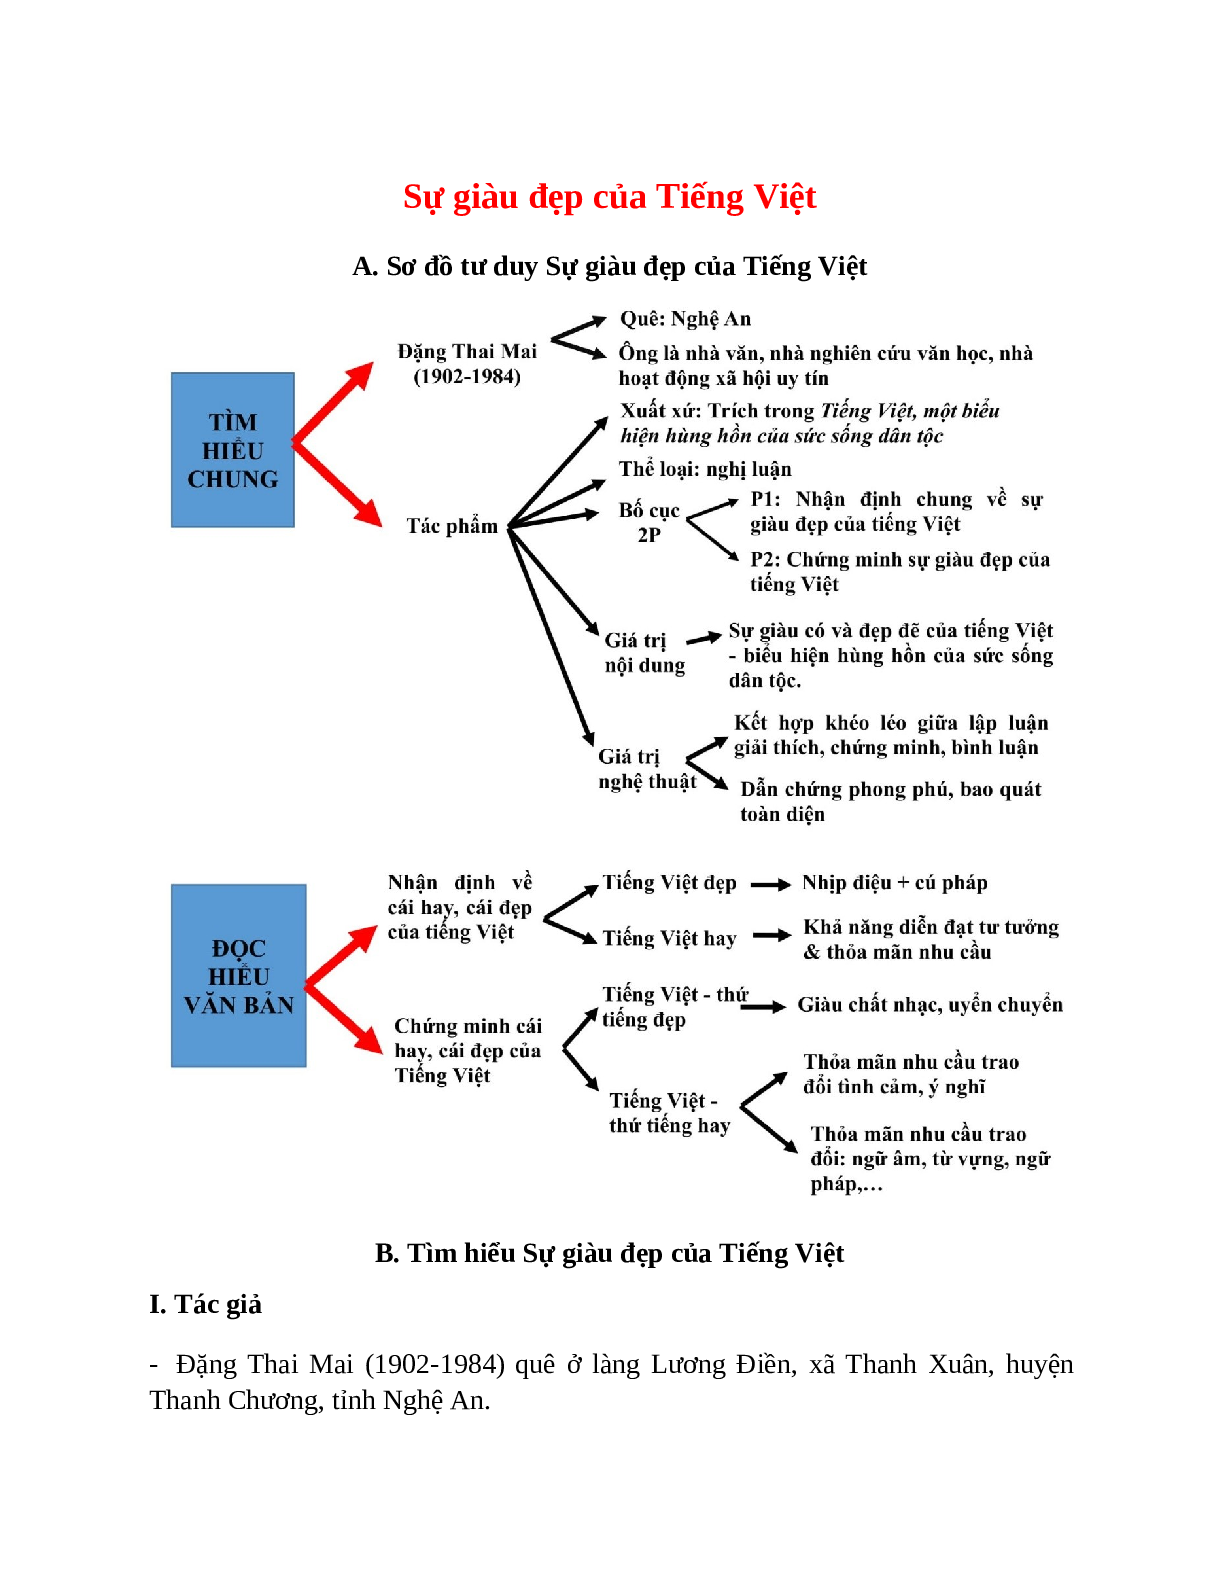 Sơ đồ tư duy bài Sự giàu đẹp của Tiếng Việt dễ nhớ, ngắn nhất - Ngữ văn lớp 7 (trang 1)